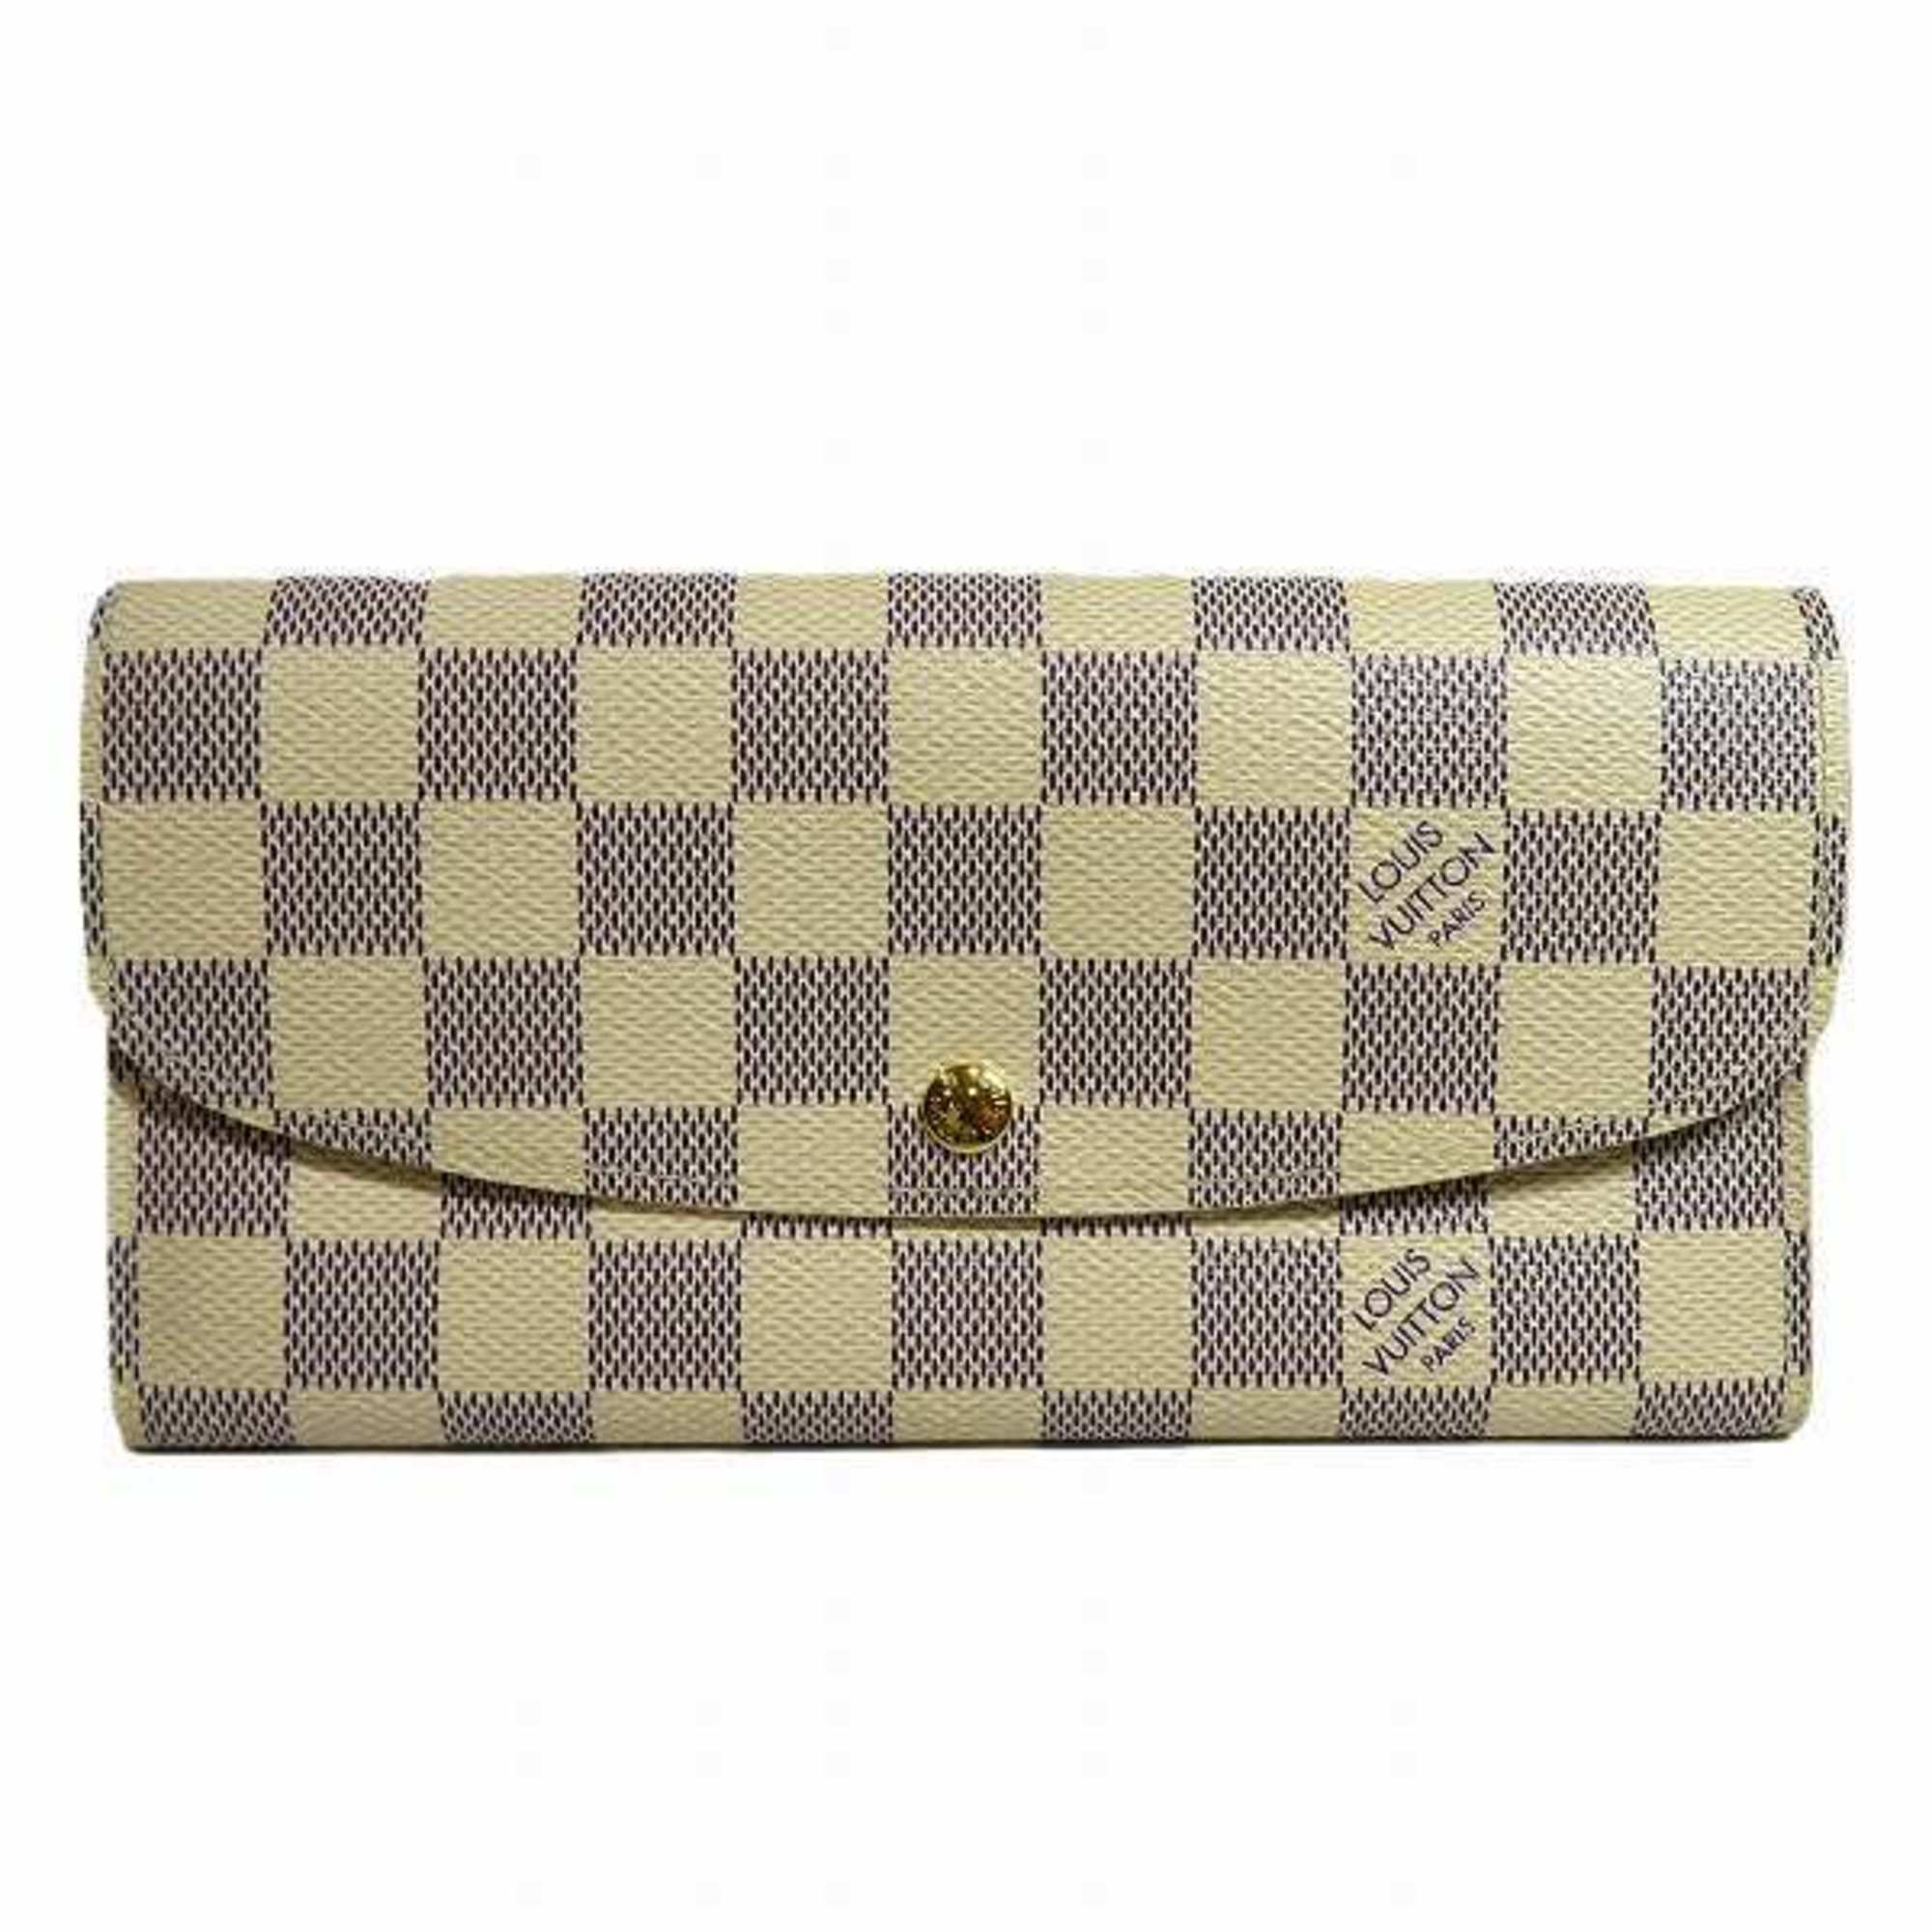 Louis Vuitton Damier Azur Portefeuille Emilie N63021 Long Wallet for Women